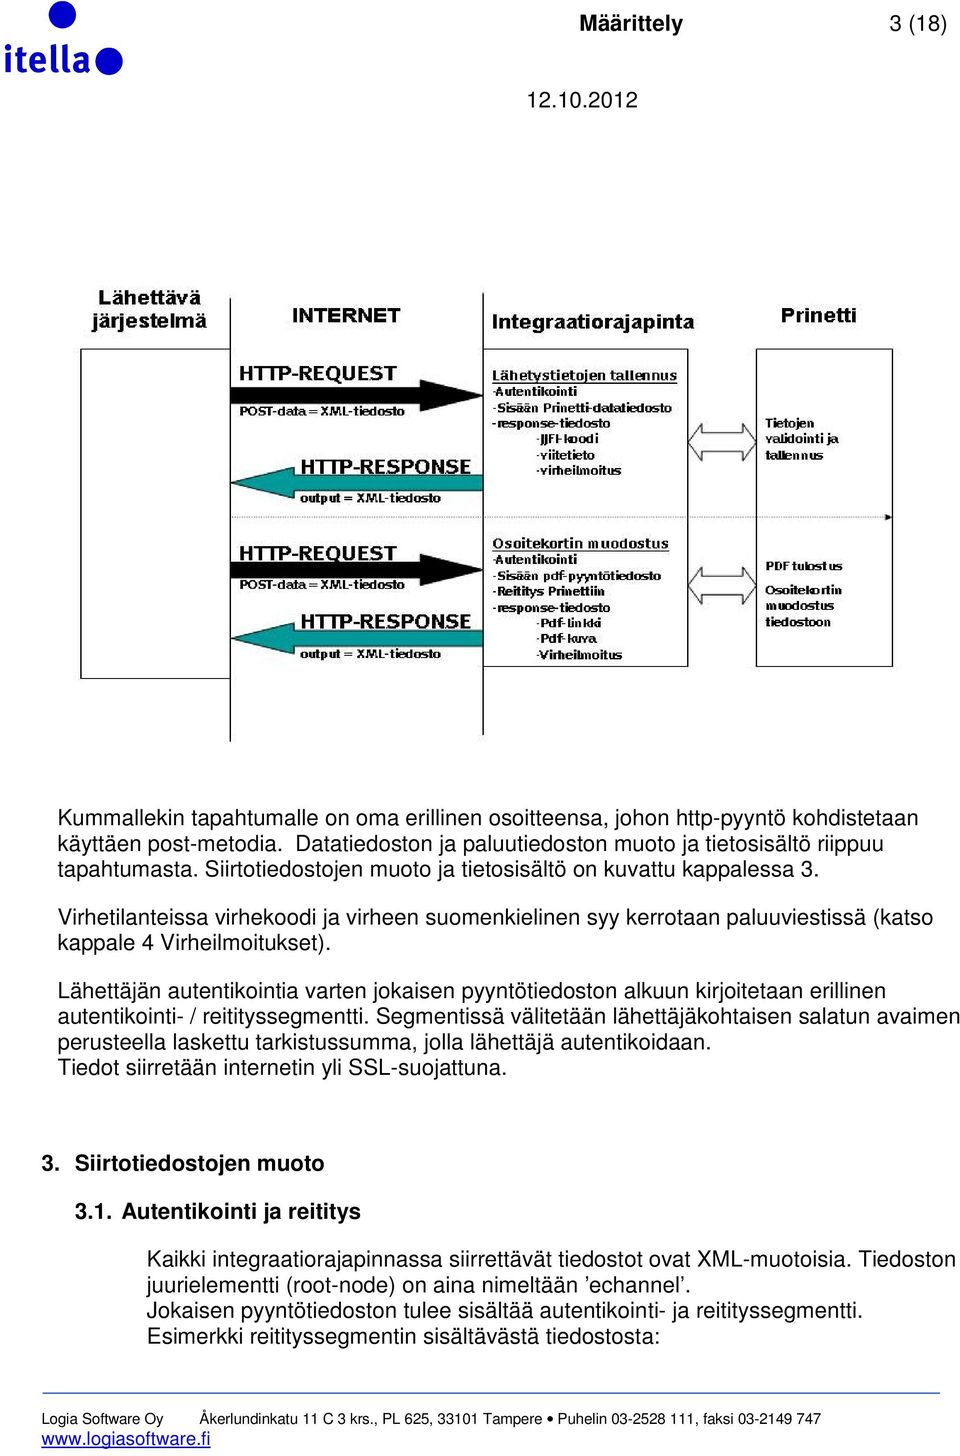 Virhetilanteissa virhekoodi ja virheen suomenkielinen syy kerrotaan paluuviestissä (katso kappale 4 Virheilmoitukset).